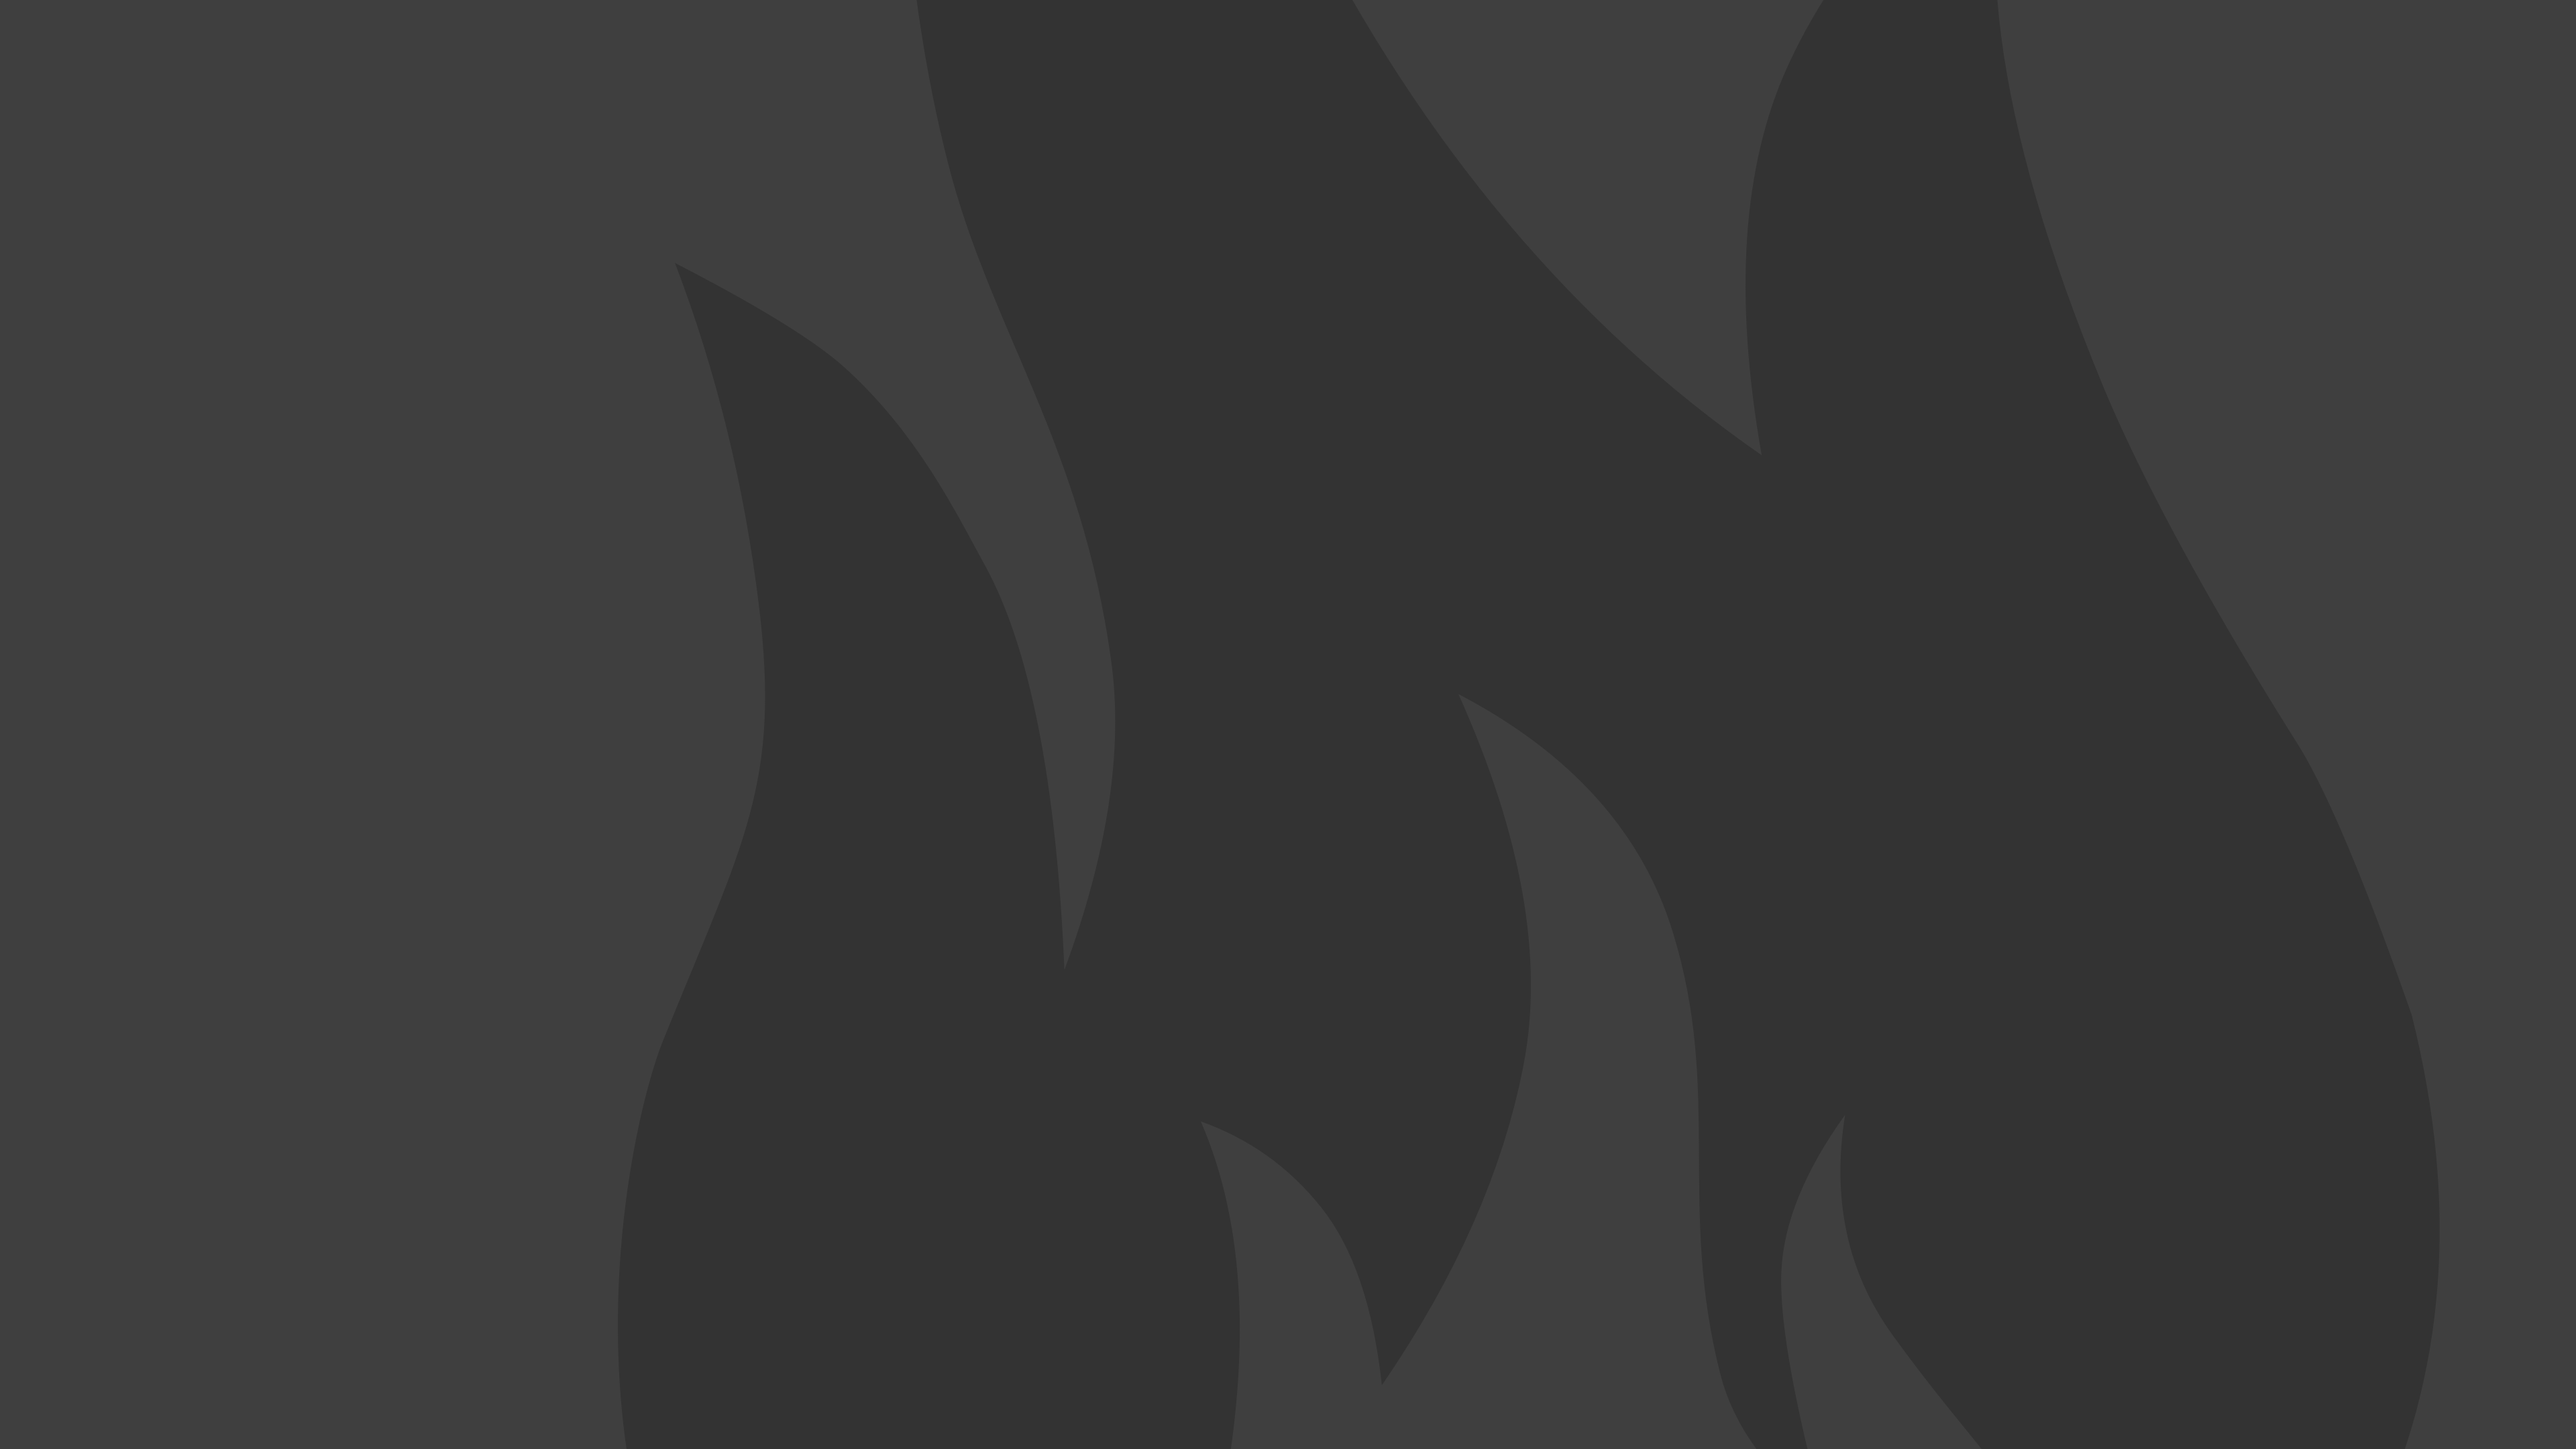 SKYCATCHFIRE - Fire Drupal 8 theme